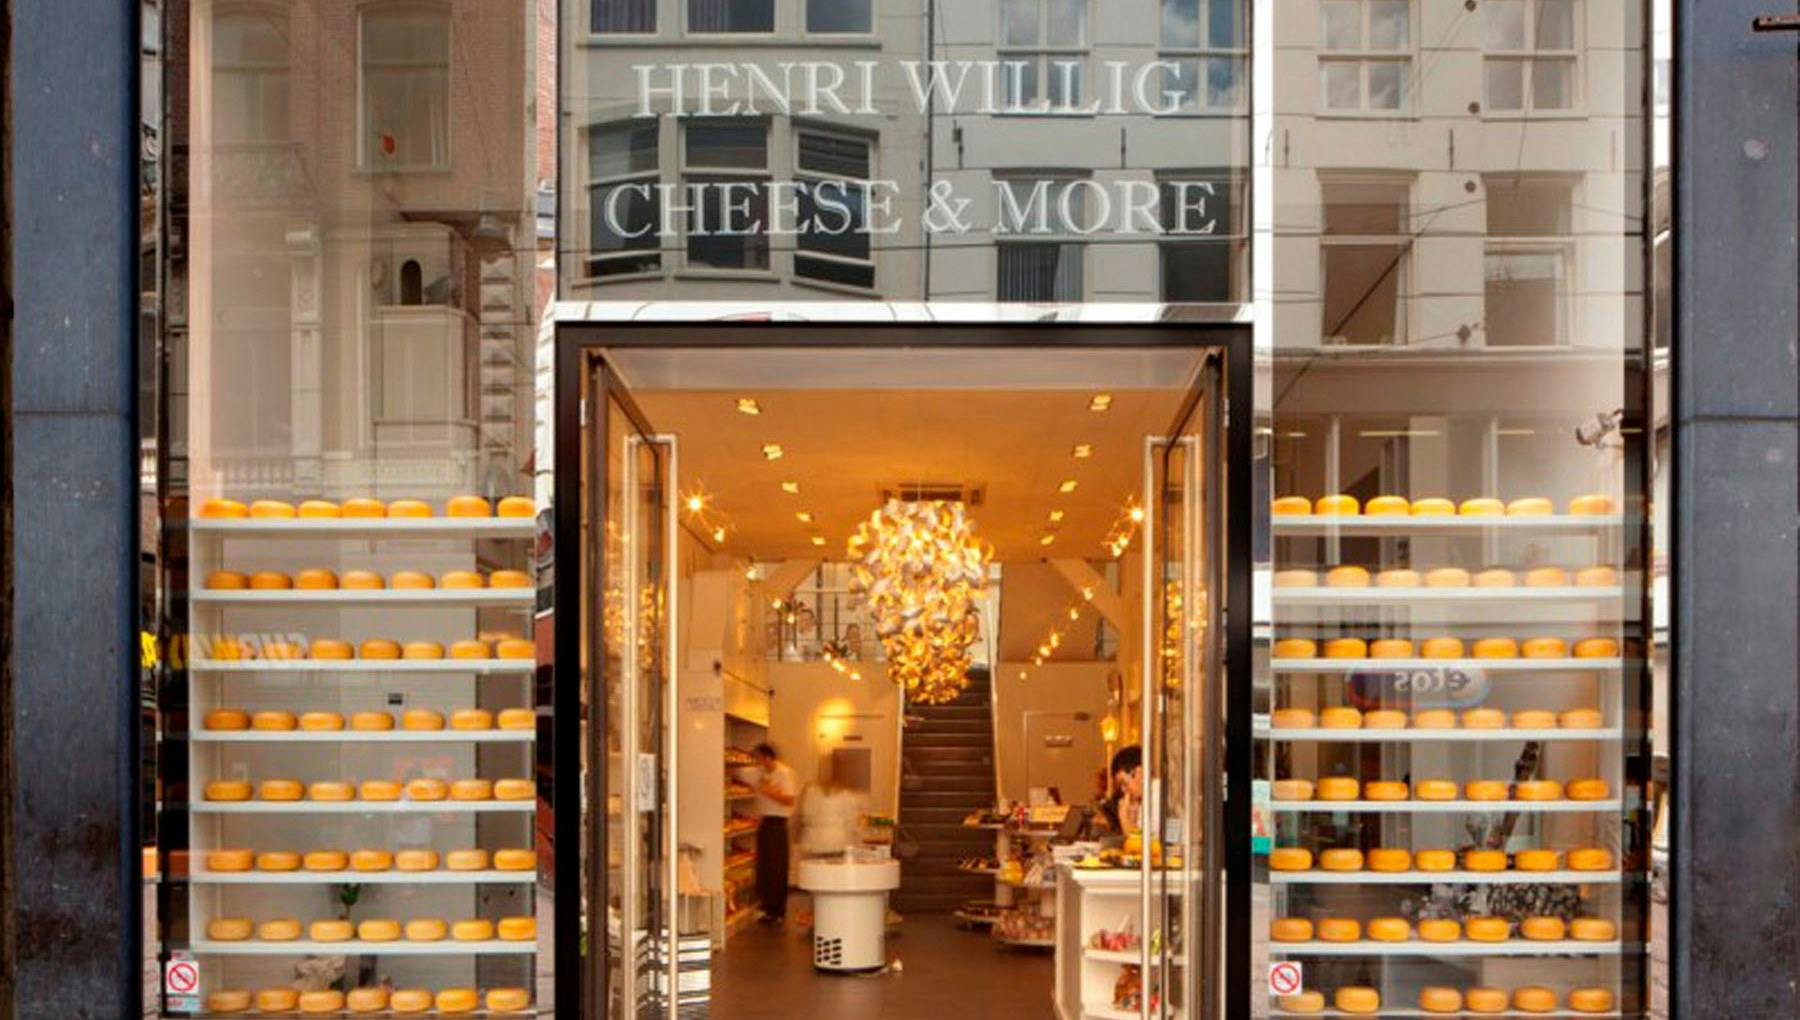 Henri Willig Cheesemakers